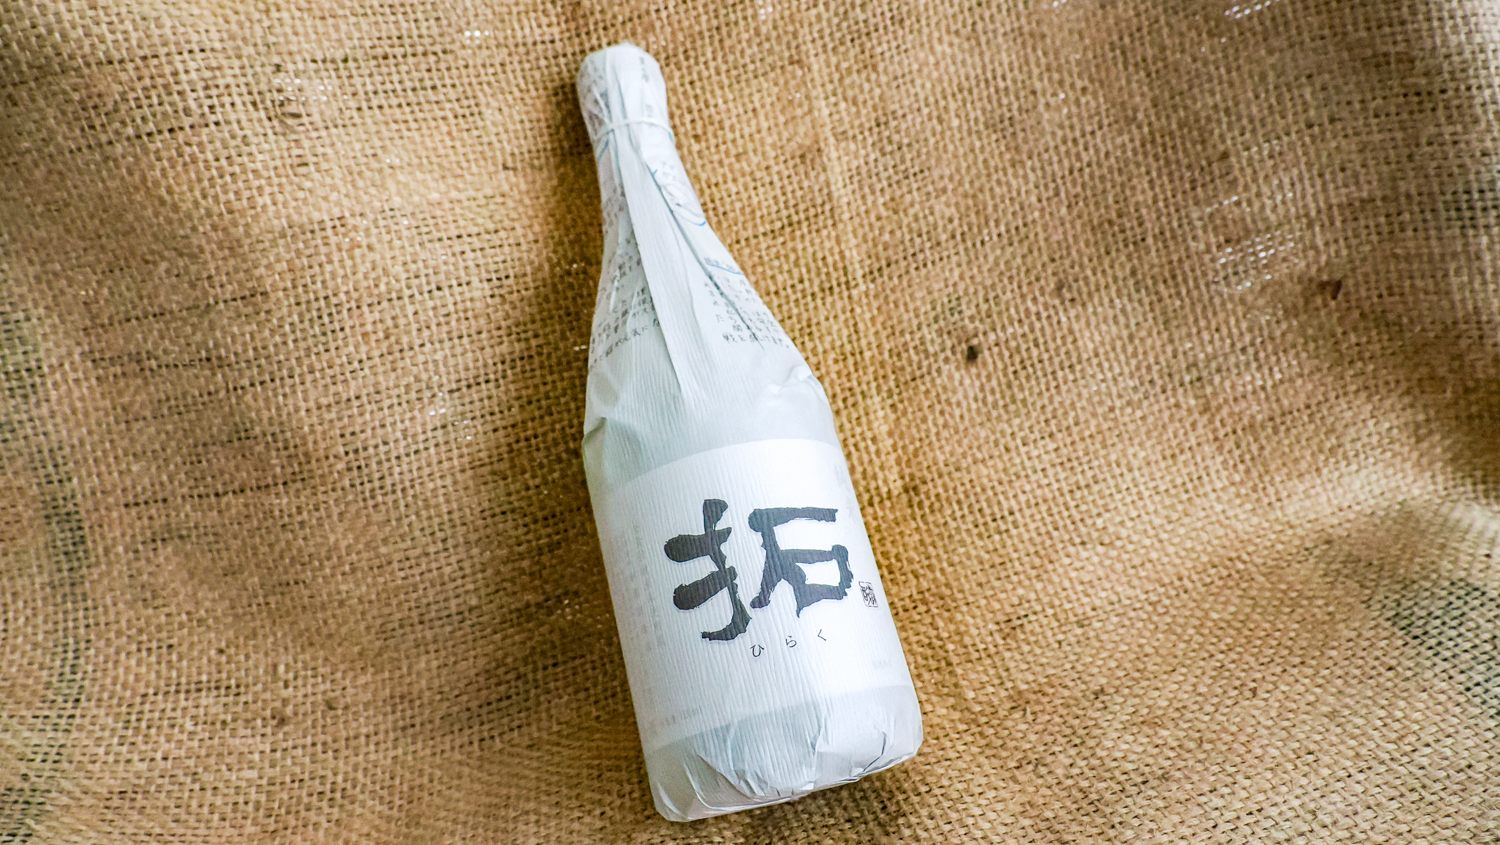 Local sake "HIRAKU" from Sado island, Niigata Prefecture